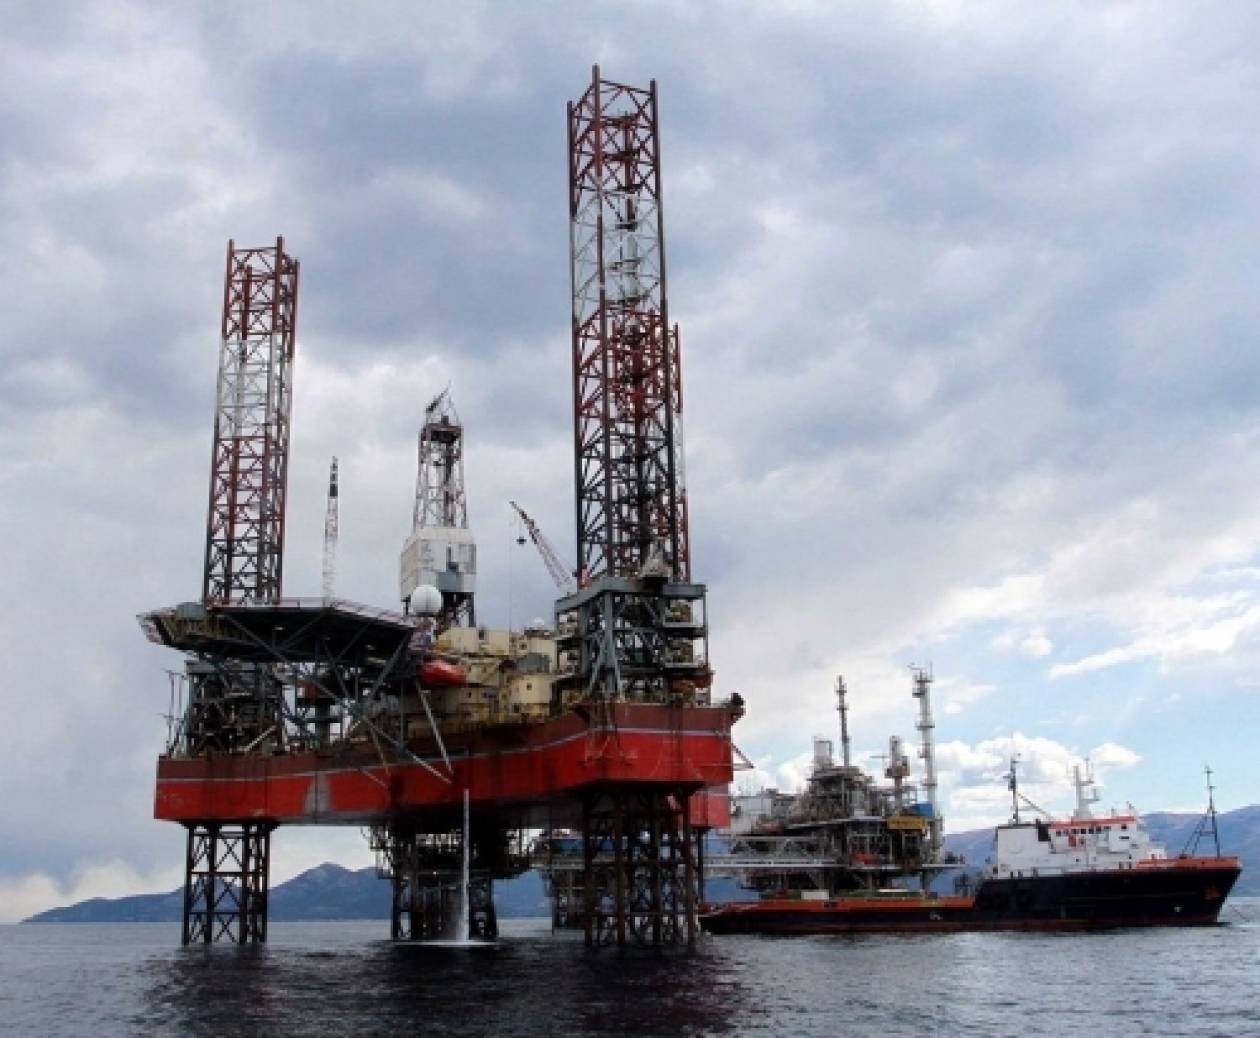 Η Ελλάδα ξεκινά έρευνες για πετρέλαιο στο Ιόνιο, αντιδρούν οι Αλβανοί